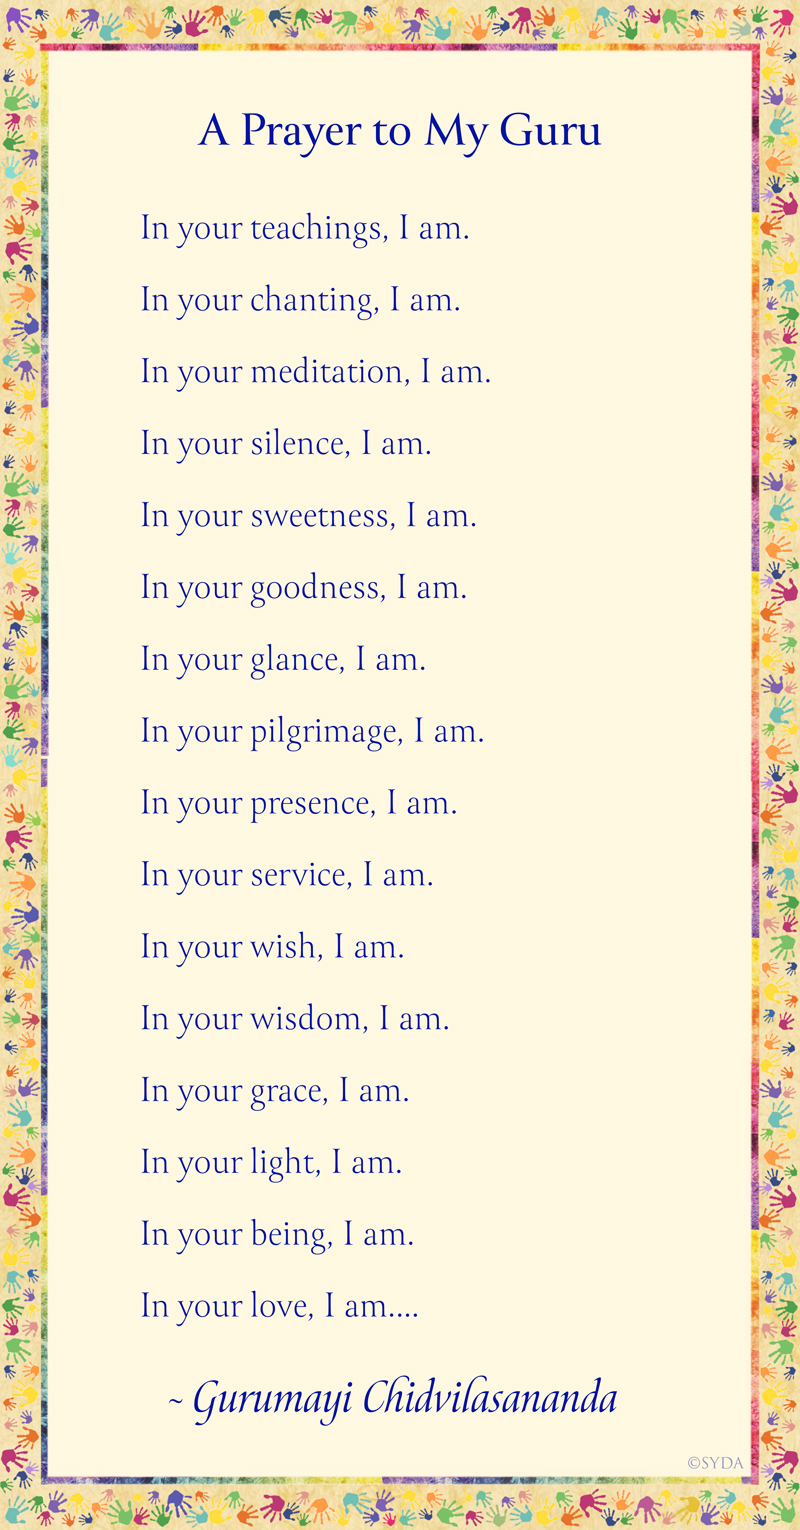 A Prayer by Gurumayi about Season's Greetings